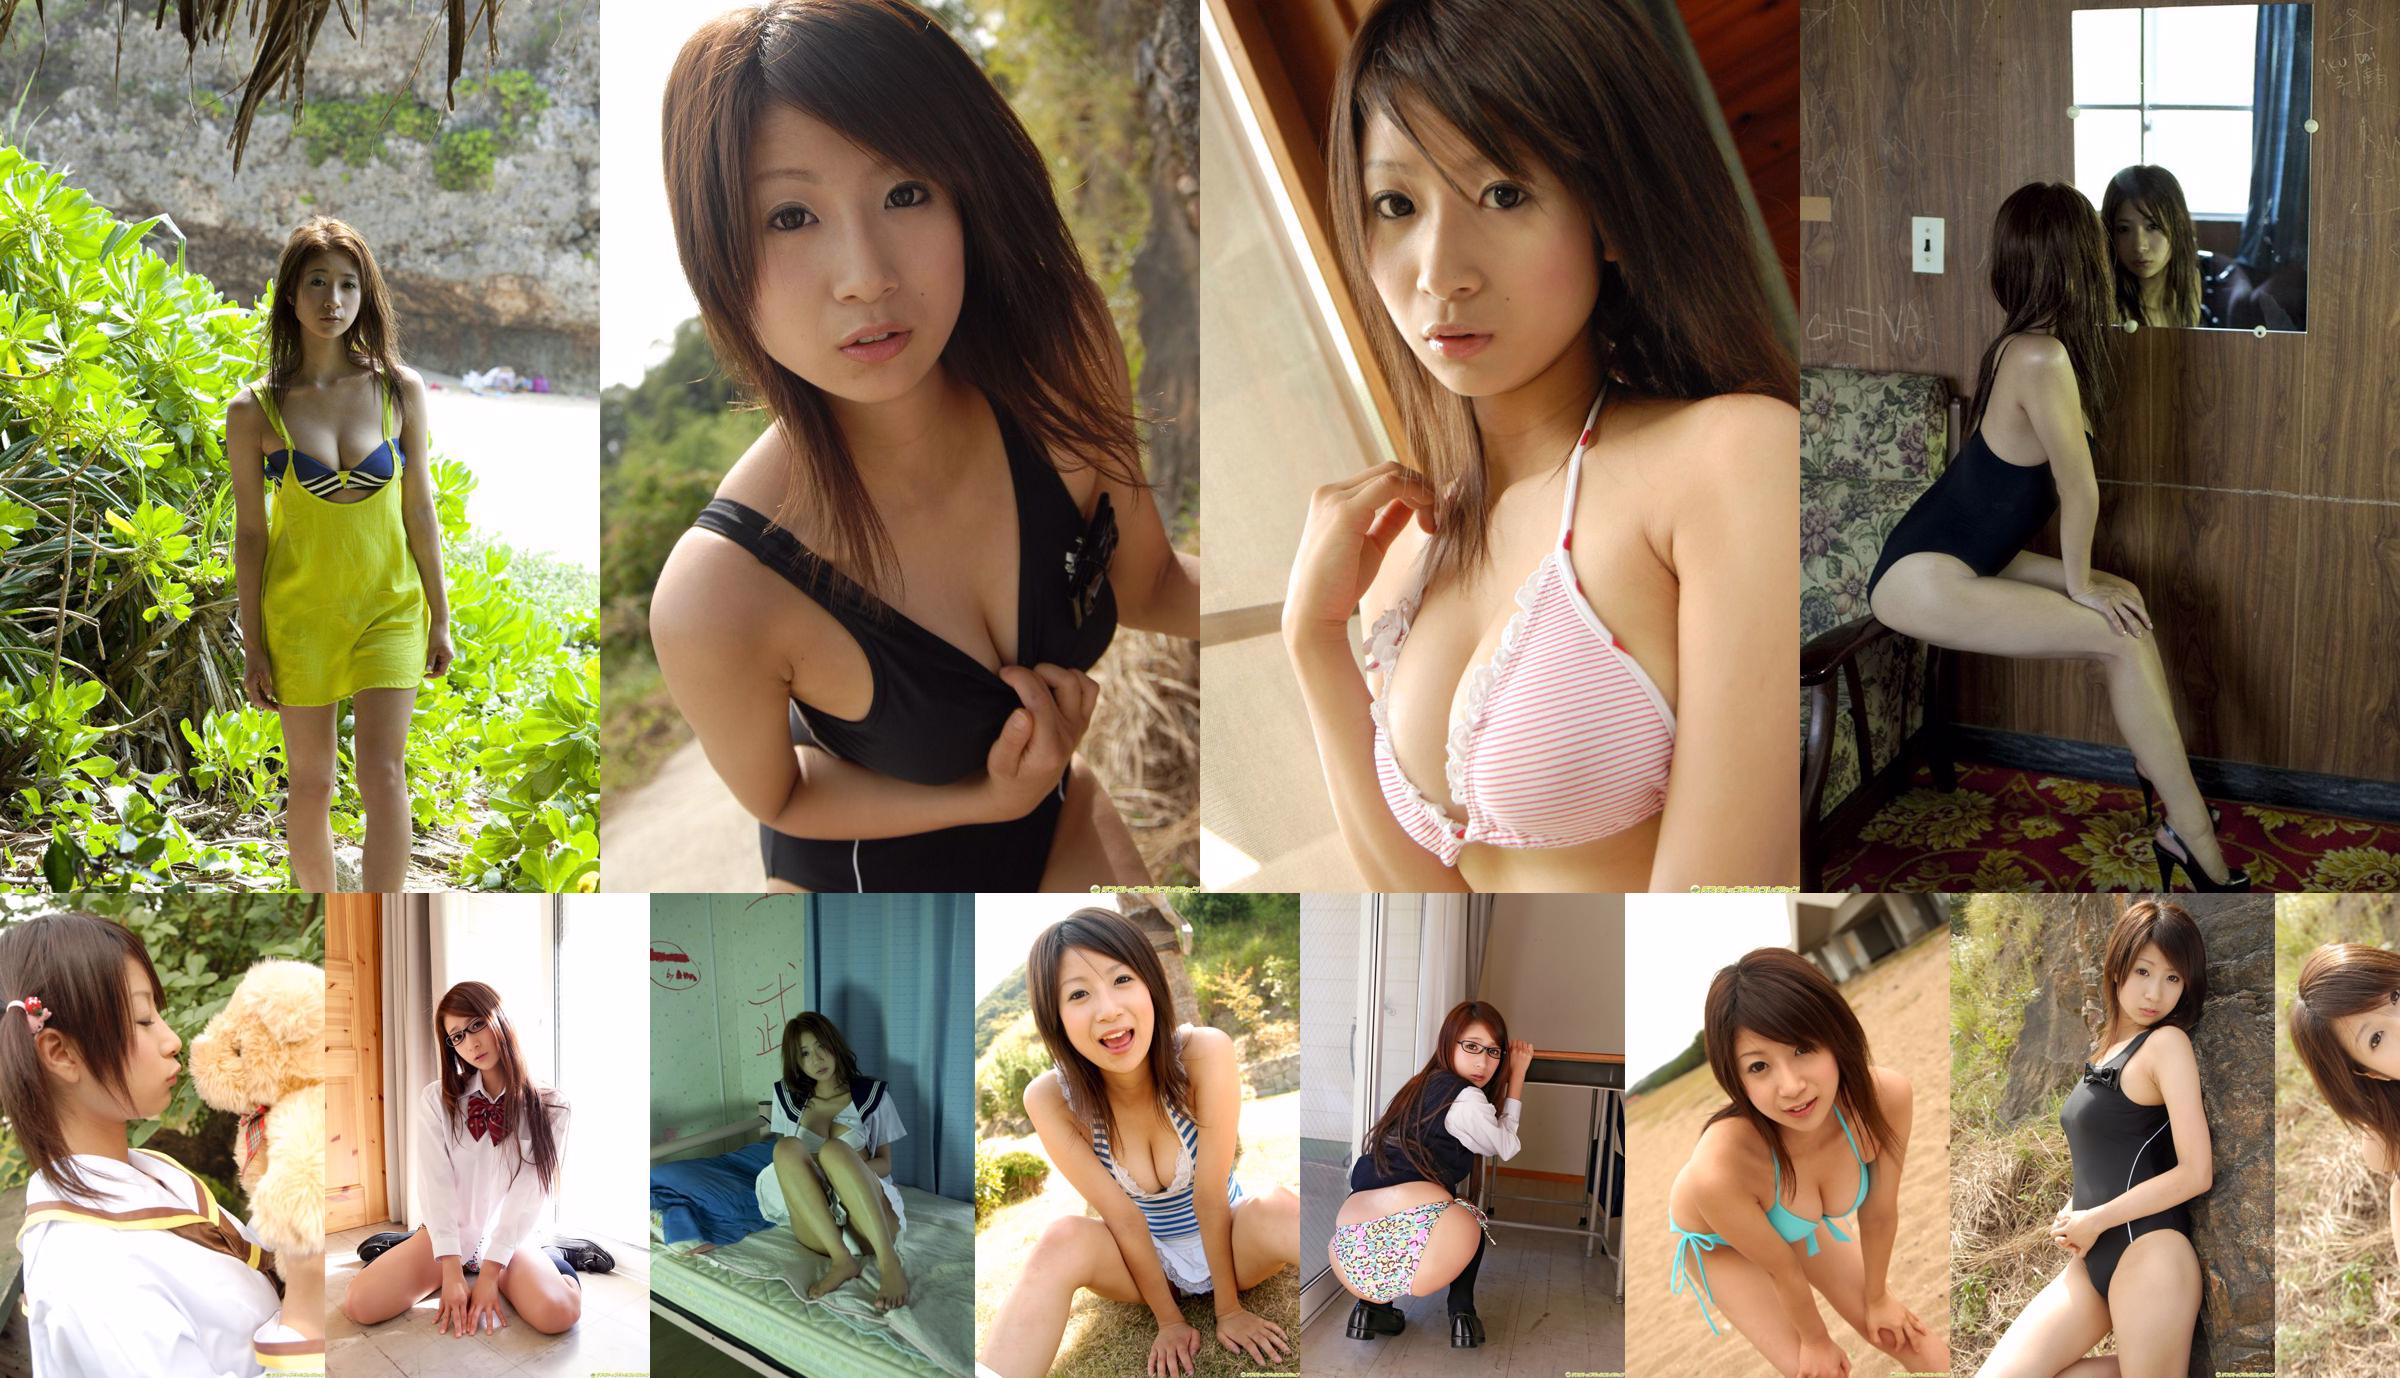 Nanako Kodama << G-Katsu zafascynowana irytującą twarzą Lori >> [DGC] NR 1096 No.378985 Strona 1